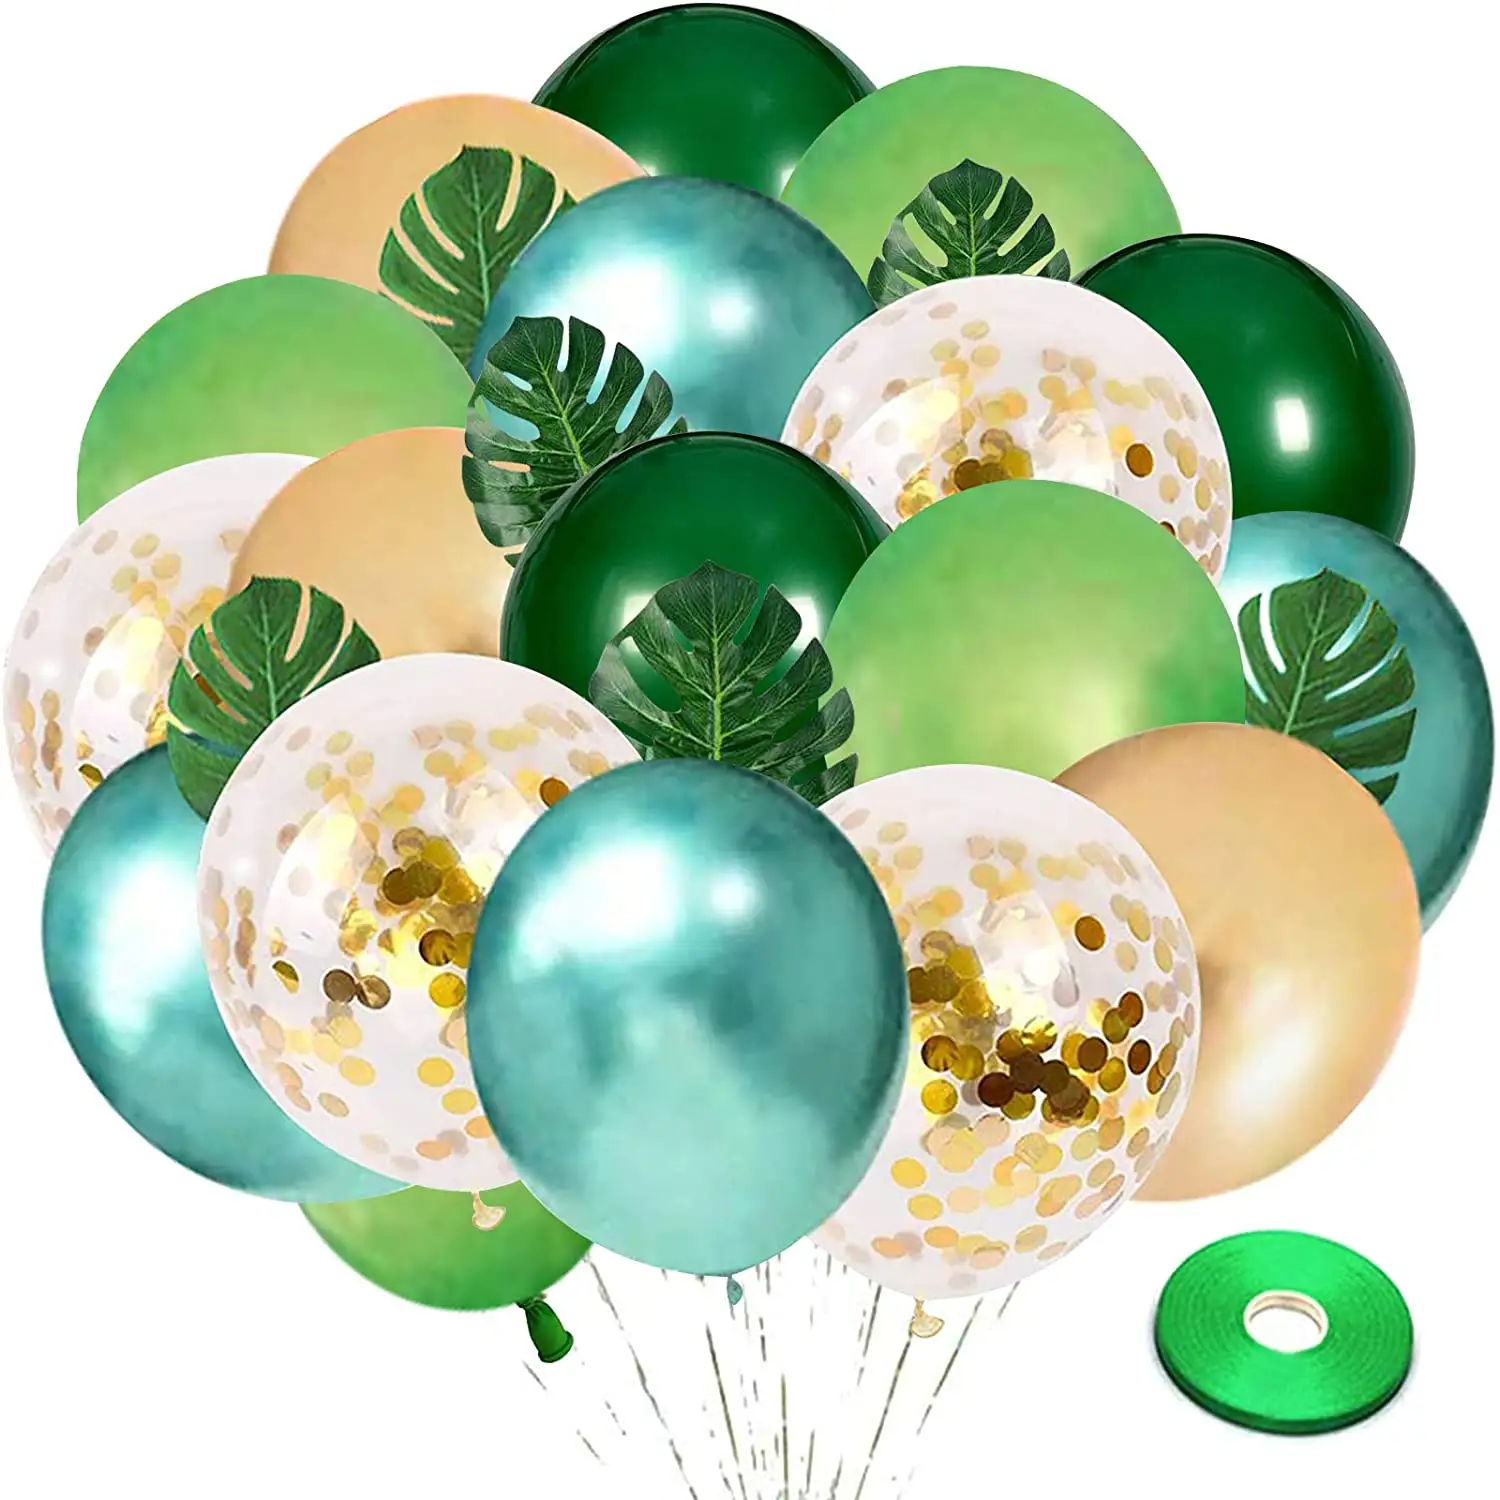 Groen En Goud Latex Ballonnen 50 Pcs Ballon Met 8 Pcs Turtle Back Bladeren Voor Verjaardag Jungle Safari Thema Party decoraties